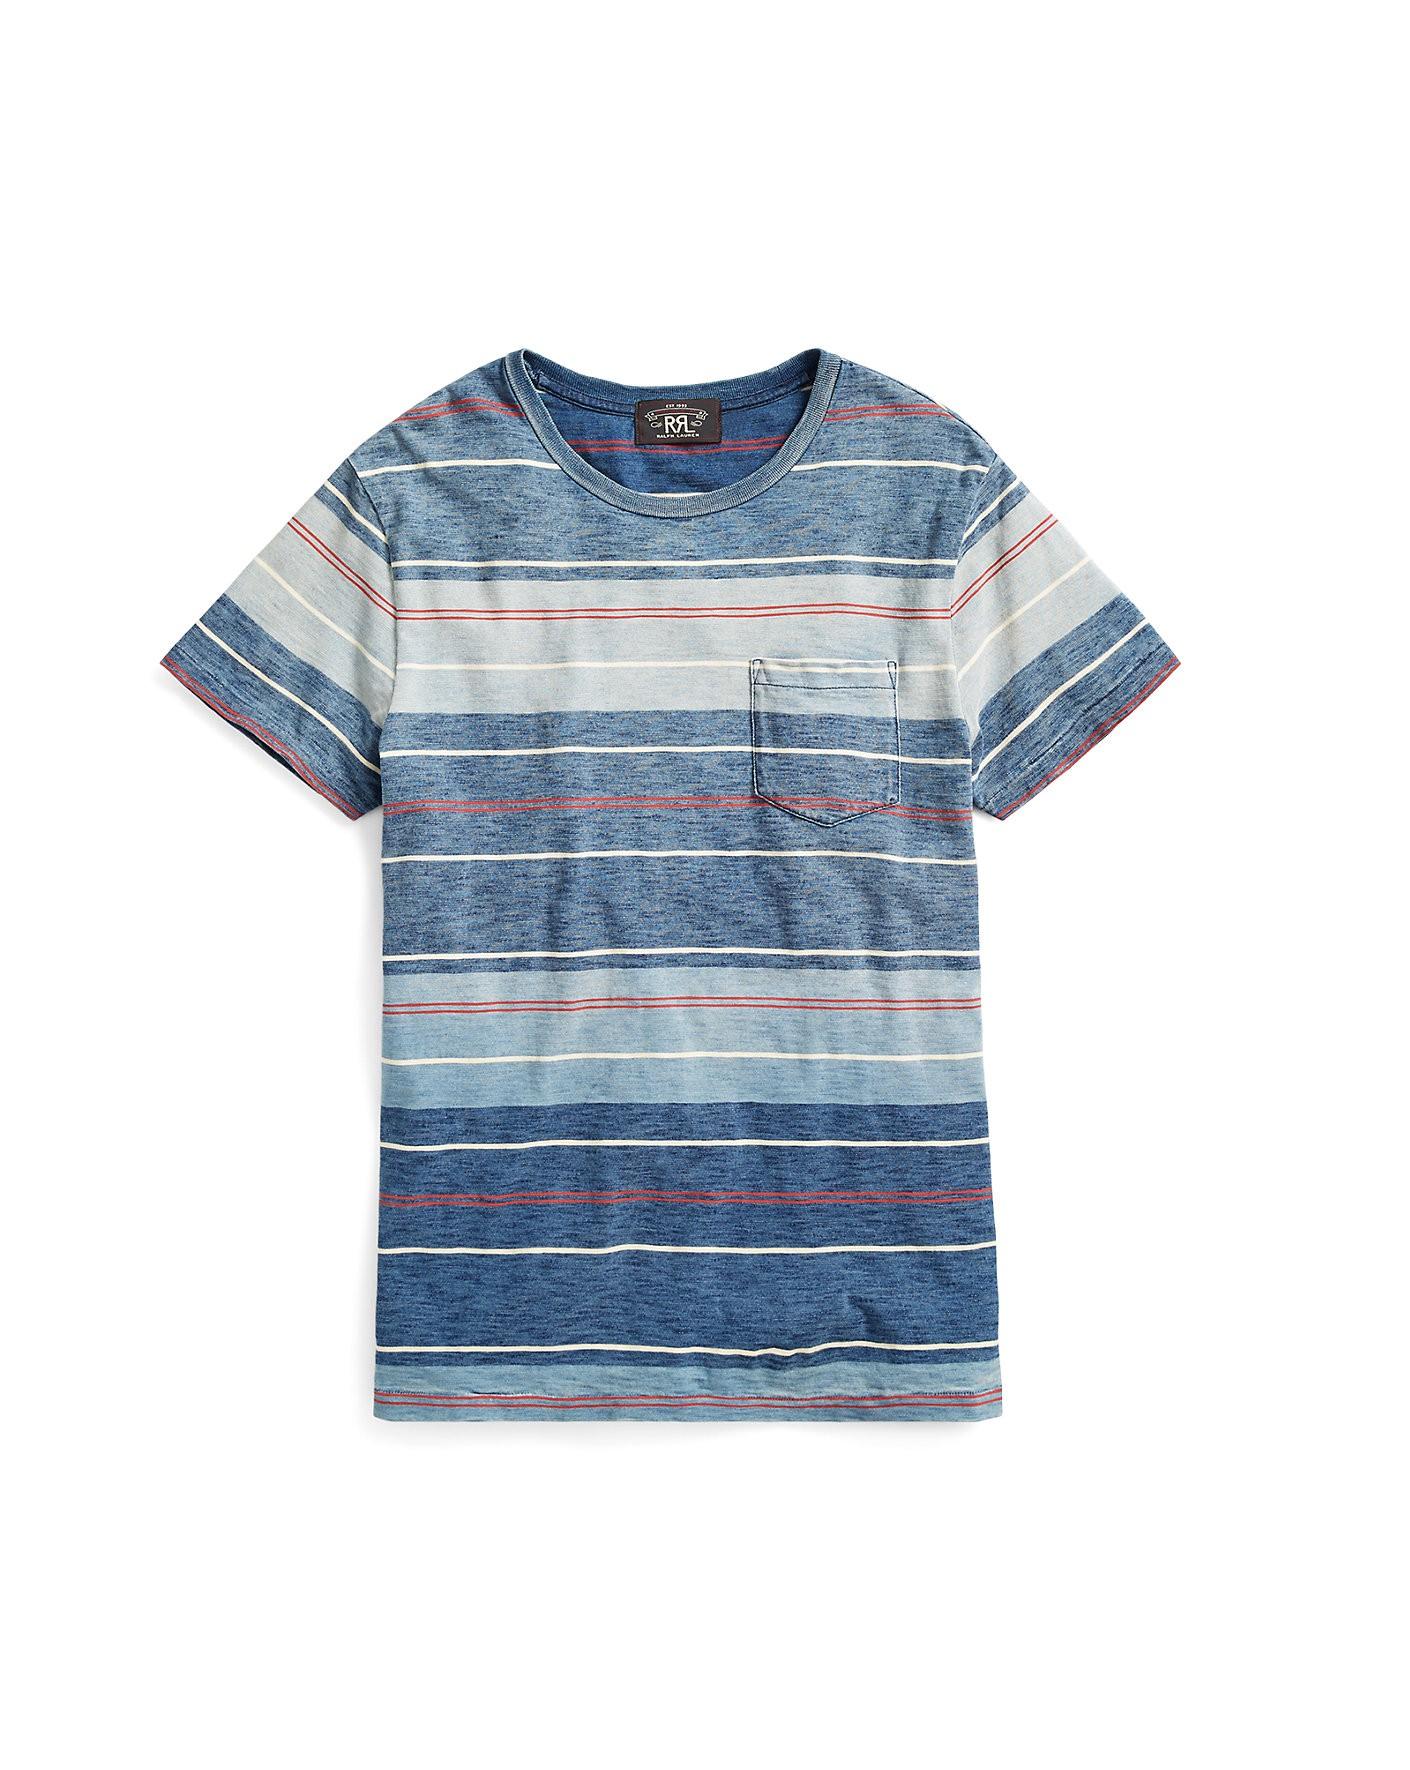 Ralph Lauren Rrl Striped Cotton Pocket T-shirt In Blue Indigo Multi ...